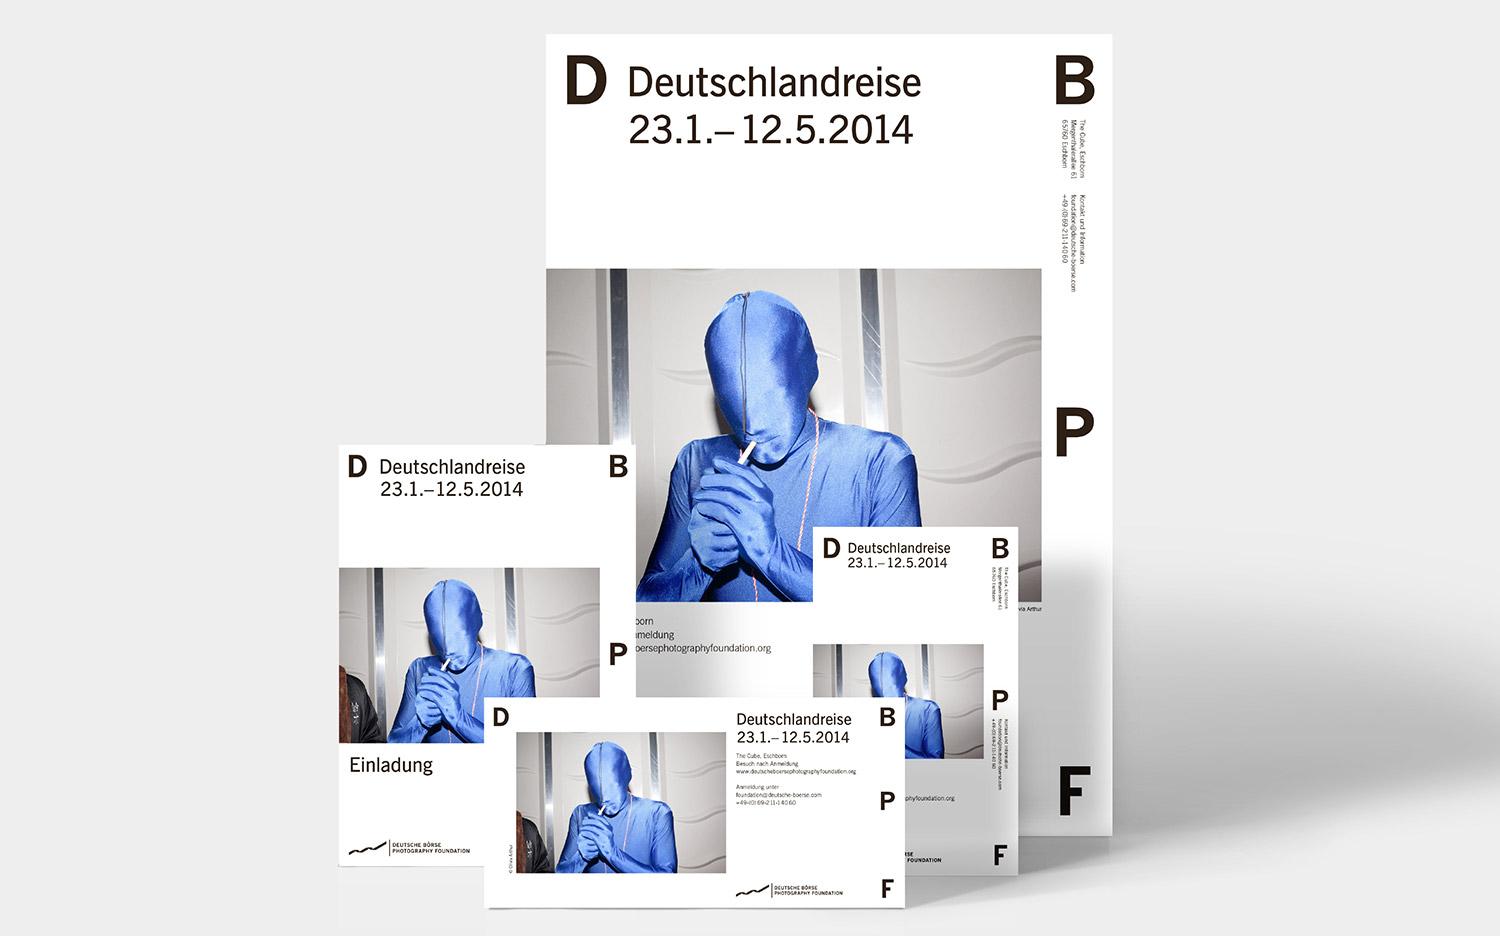 Deutsche Börse Photography Foundation